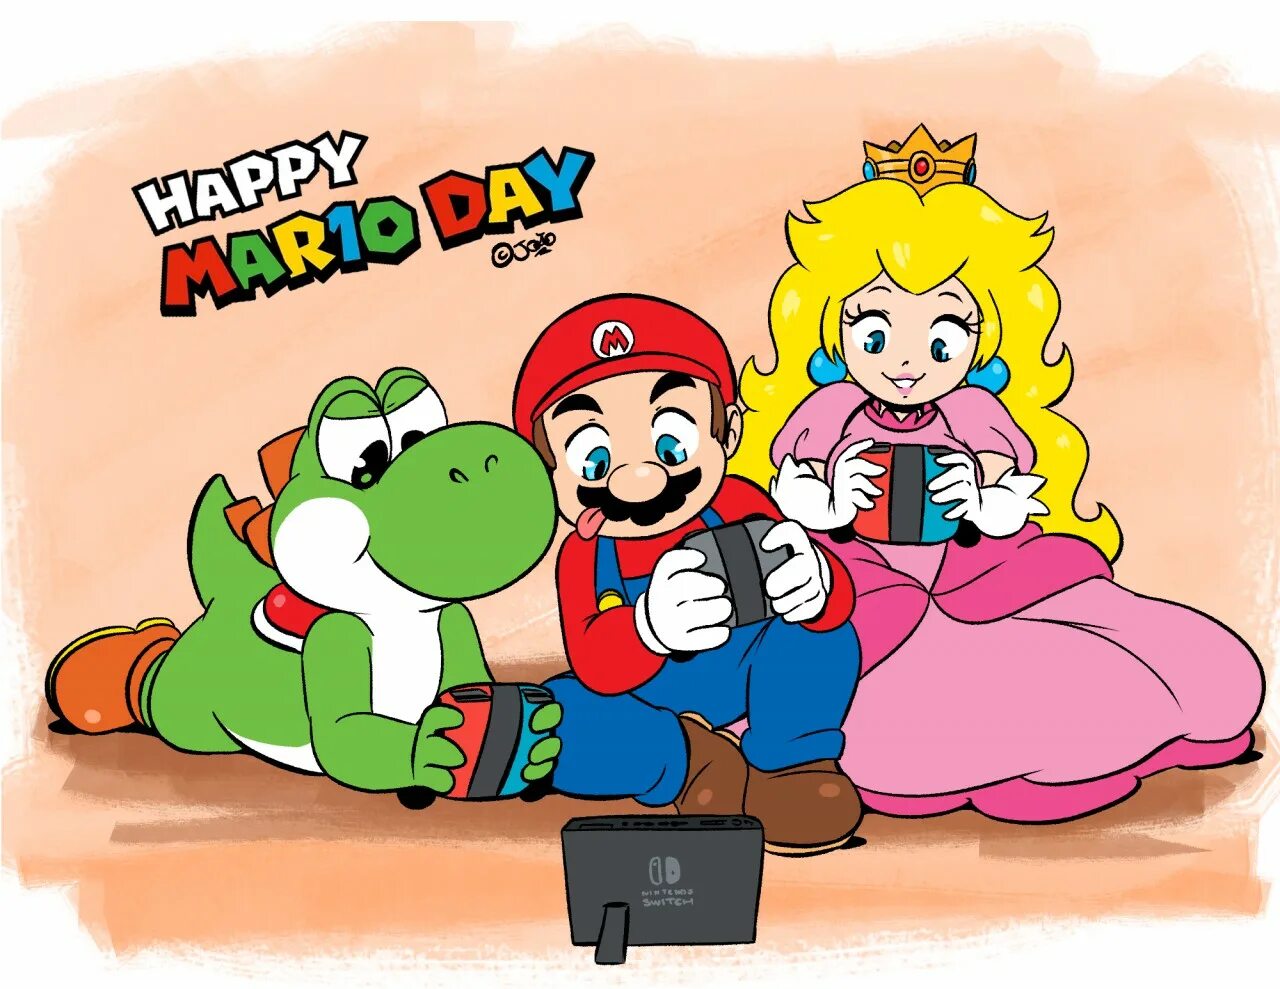 Mario day. Мама Марио. Хэппи Марио дей. День Марио (mar10 Day). Mario Yoshi and Princess Peach.